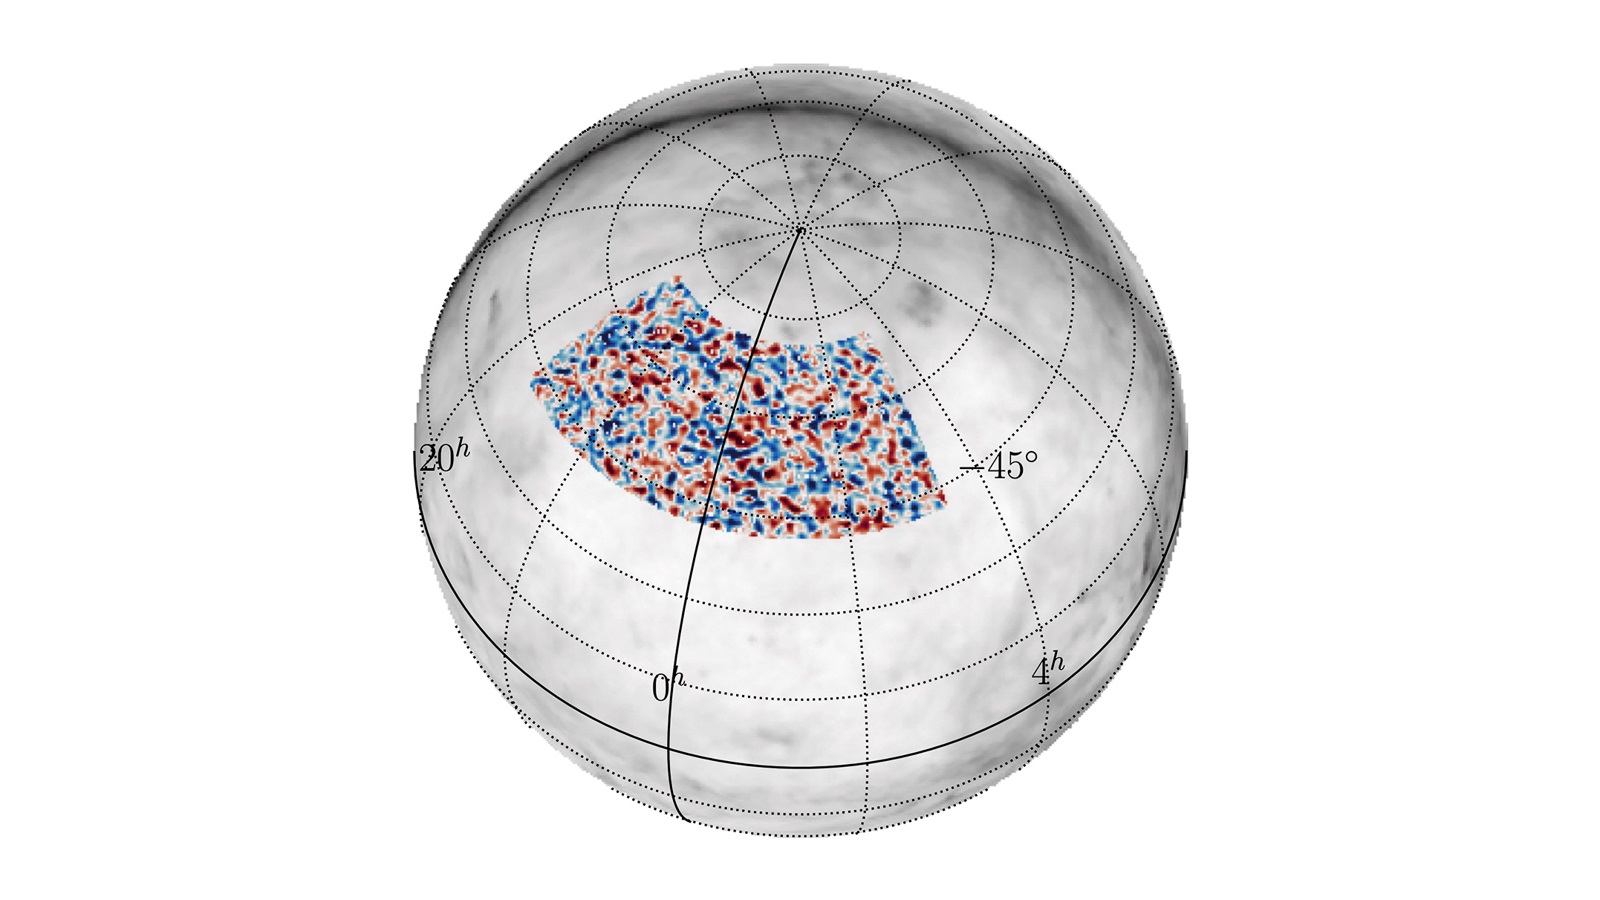 observation of scaled matter distribution